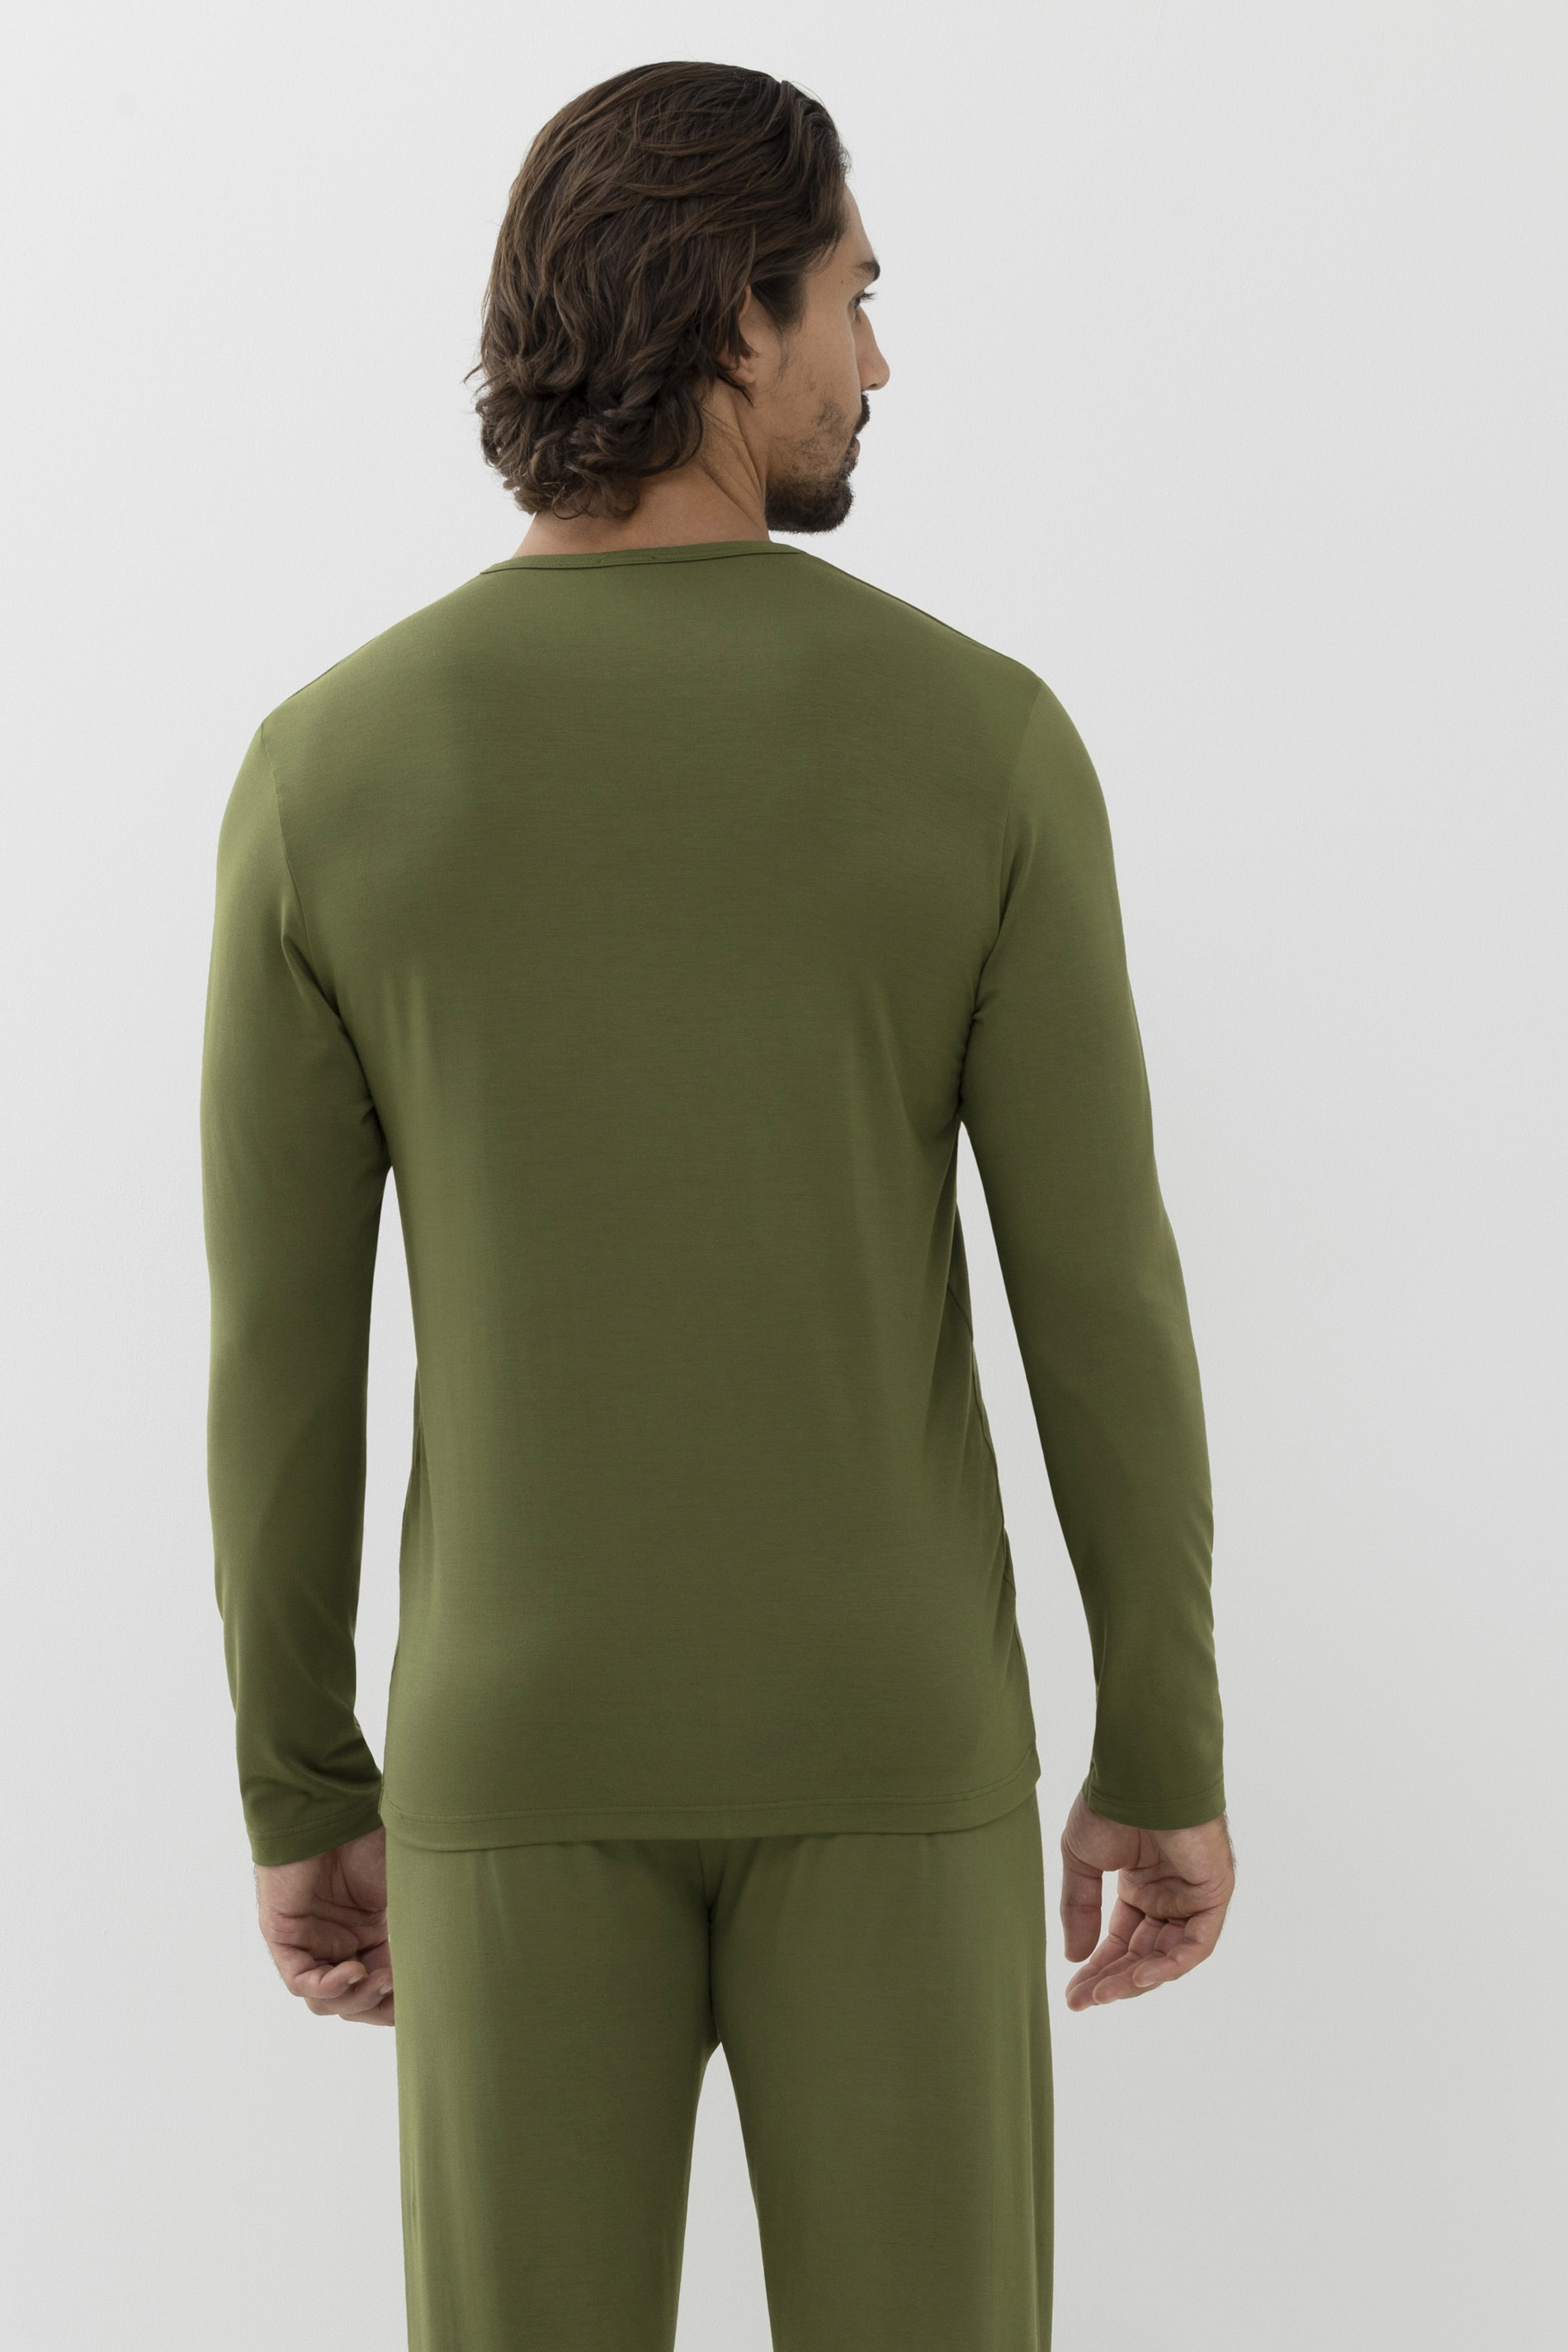 Homewear-shirt Serie Jefferson Modal Achteraanzicht | mey®